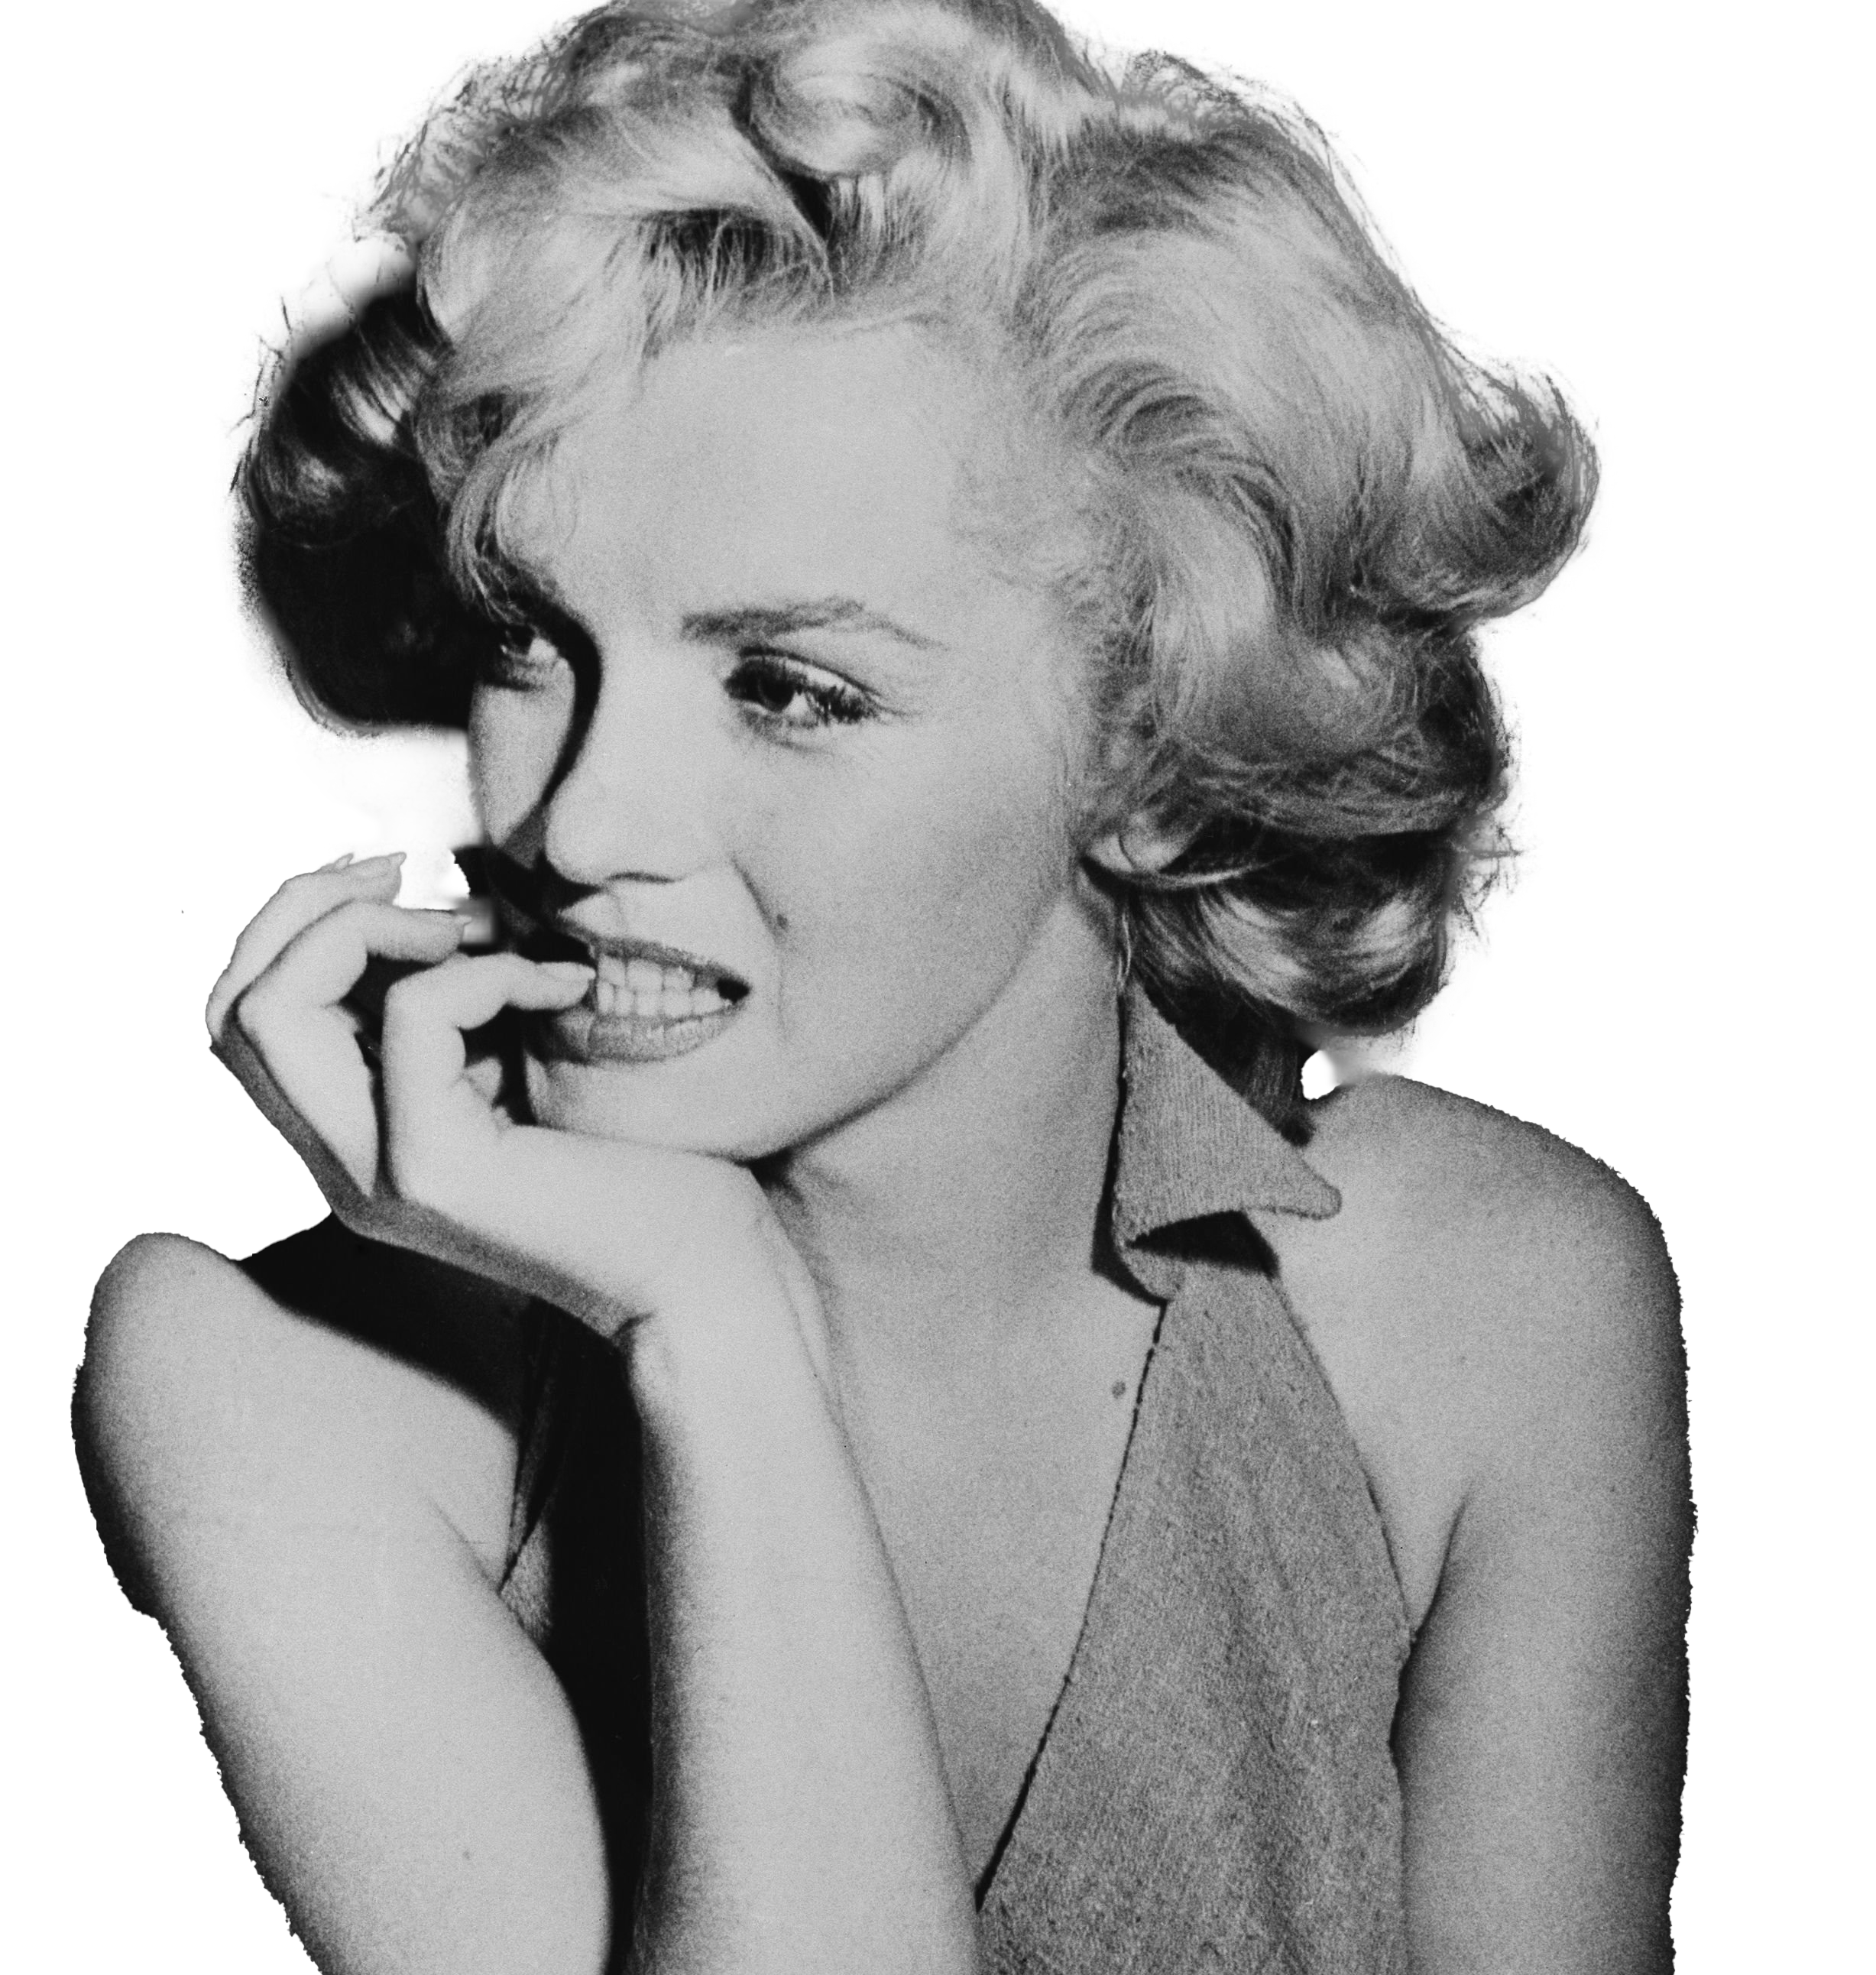 Marilyn Monroe PNG Image